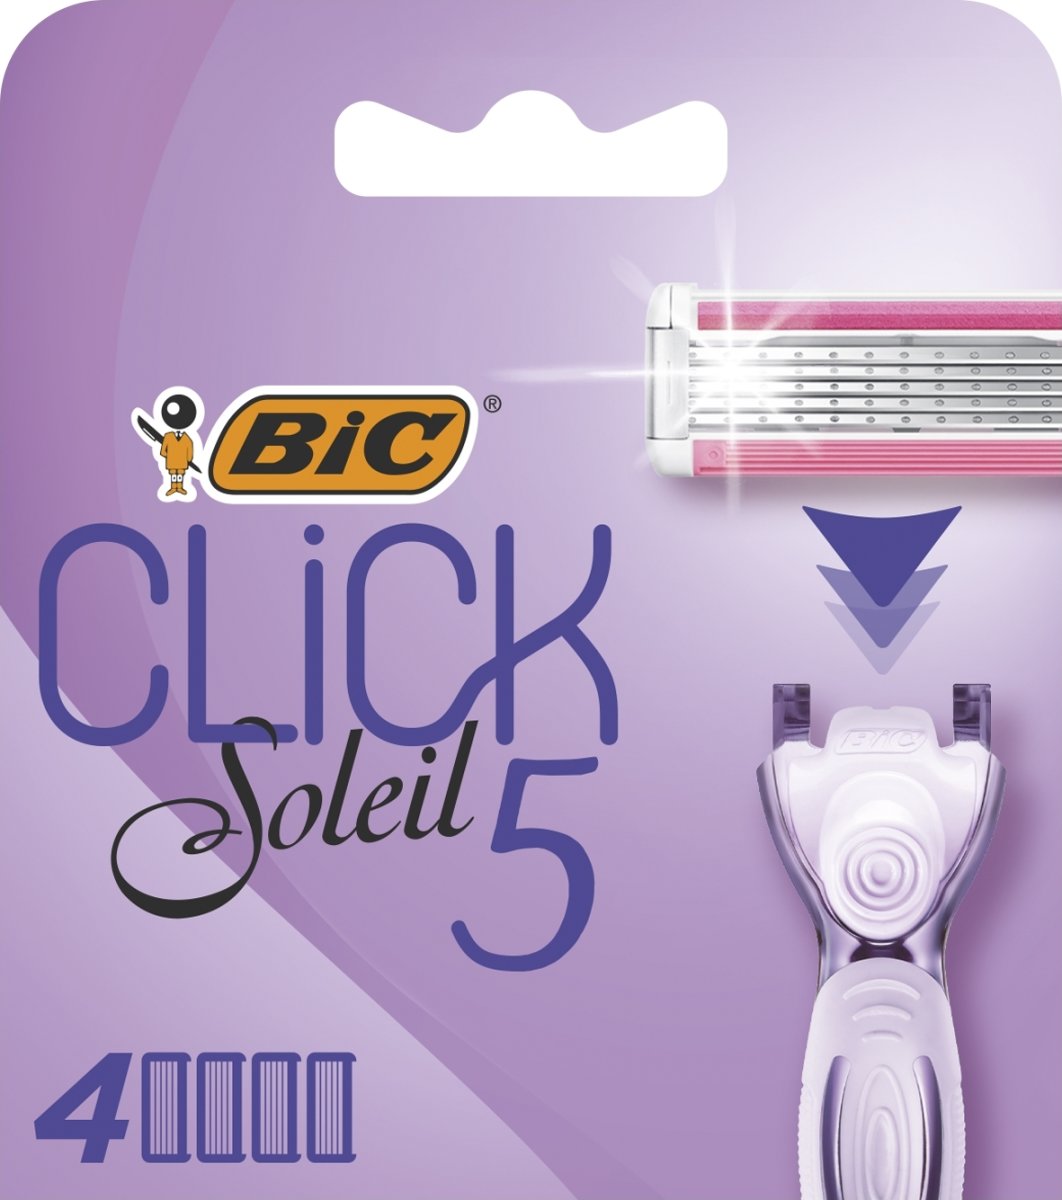 BiC Click Soleil 5 Barberskraber